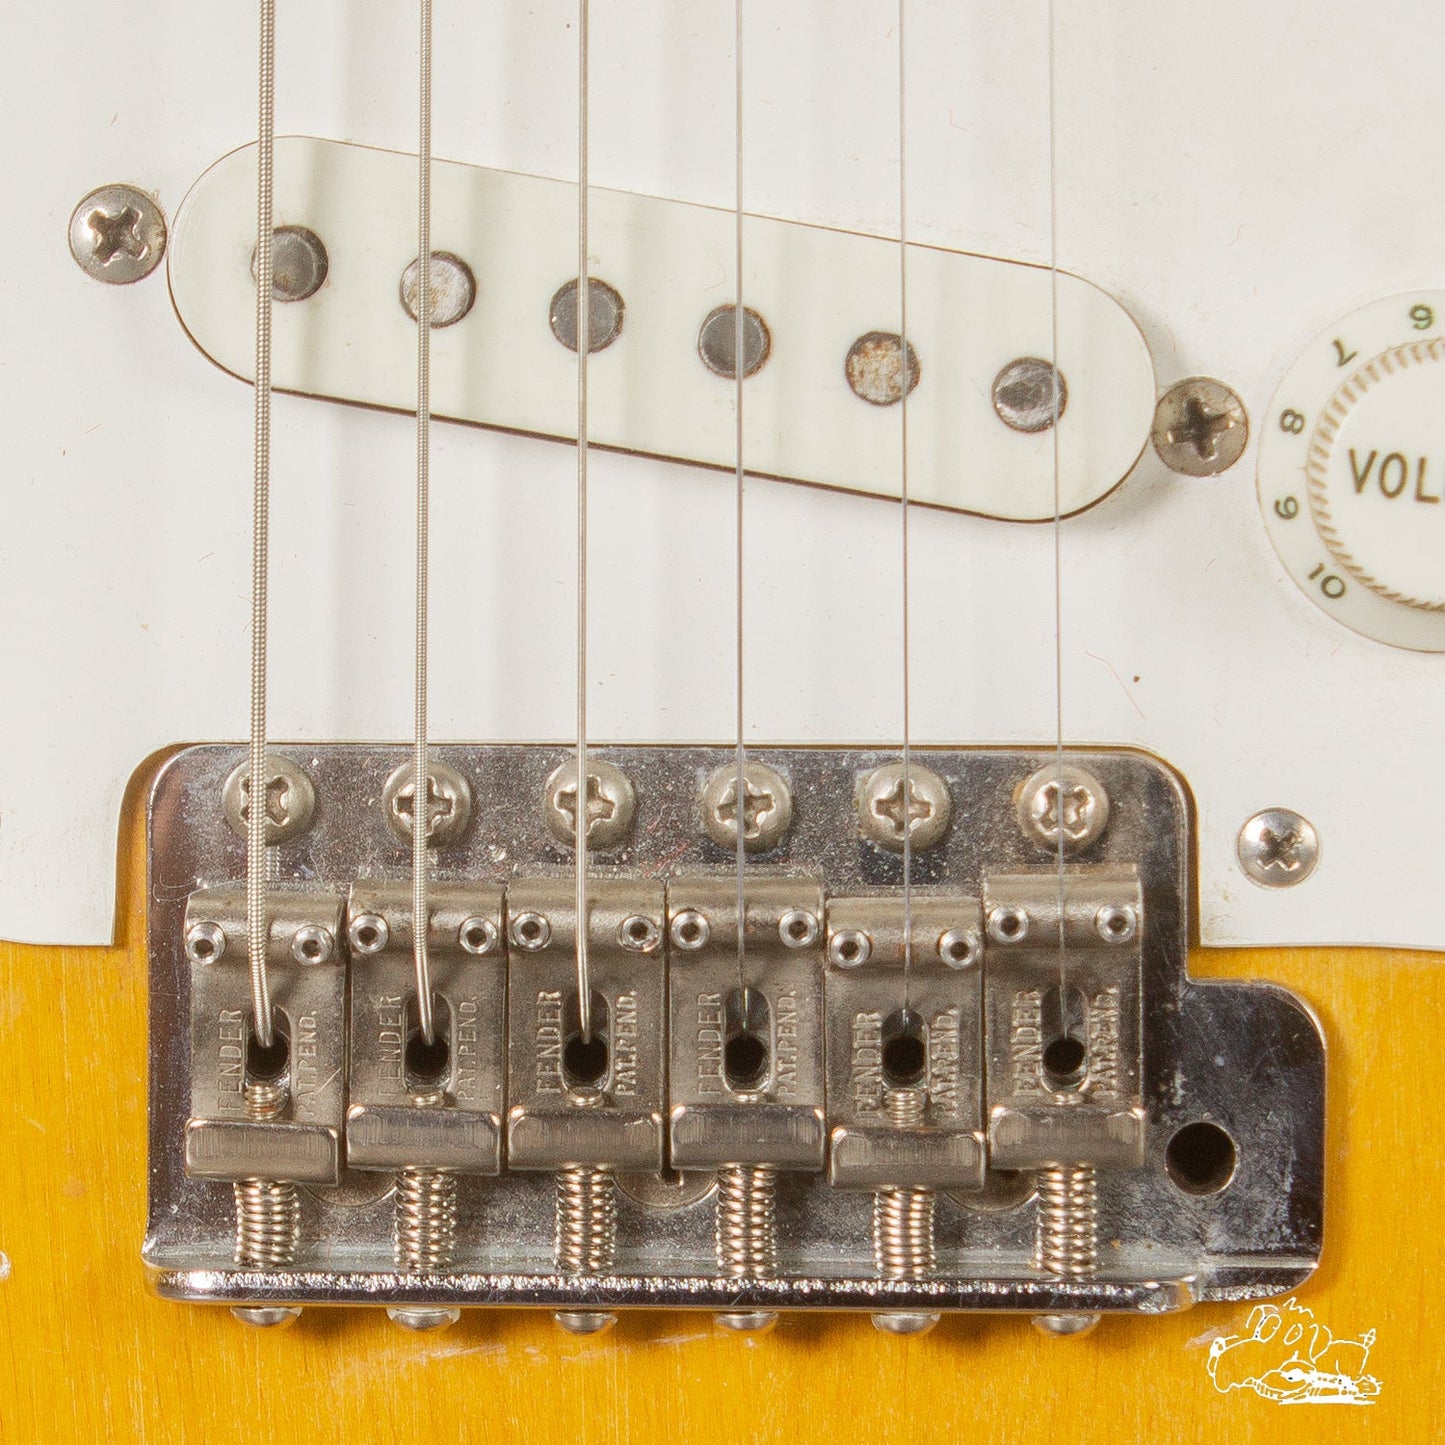 1957 Fender Stratocaster